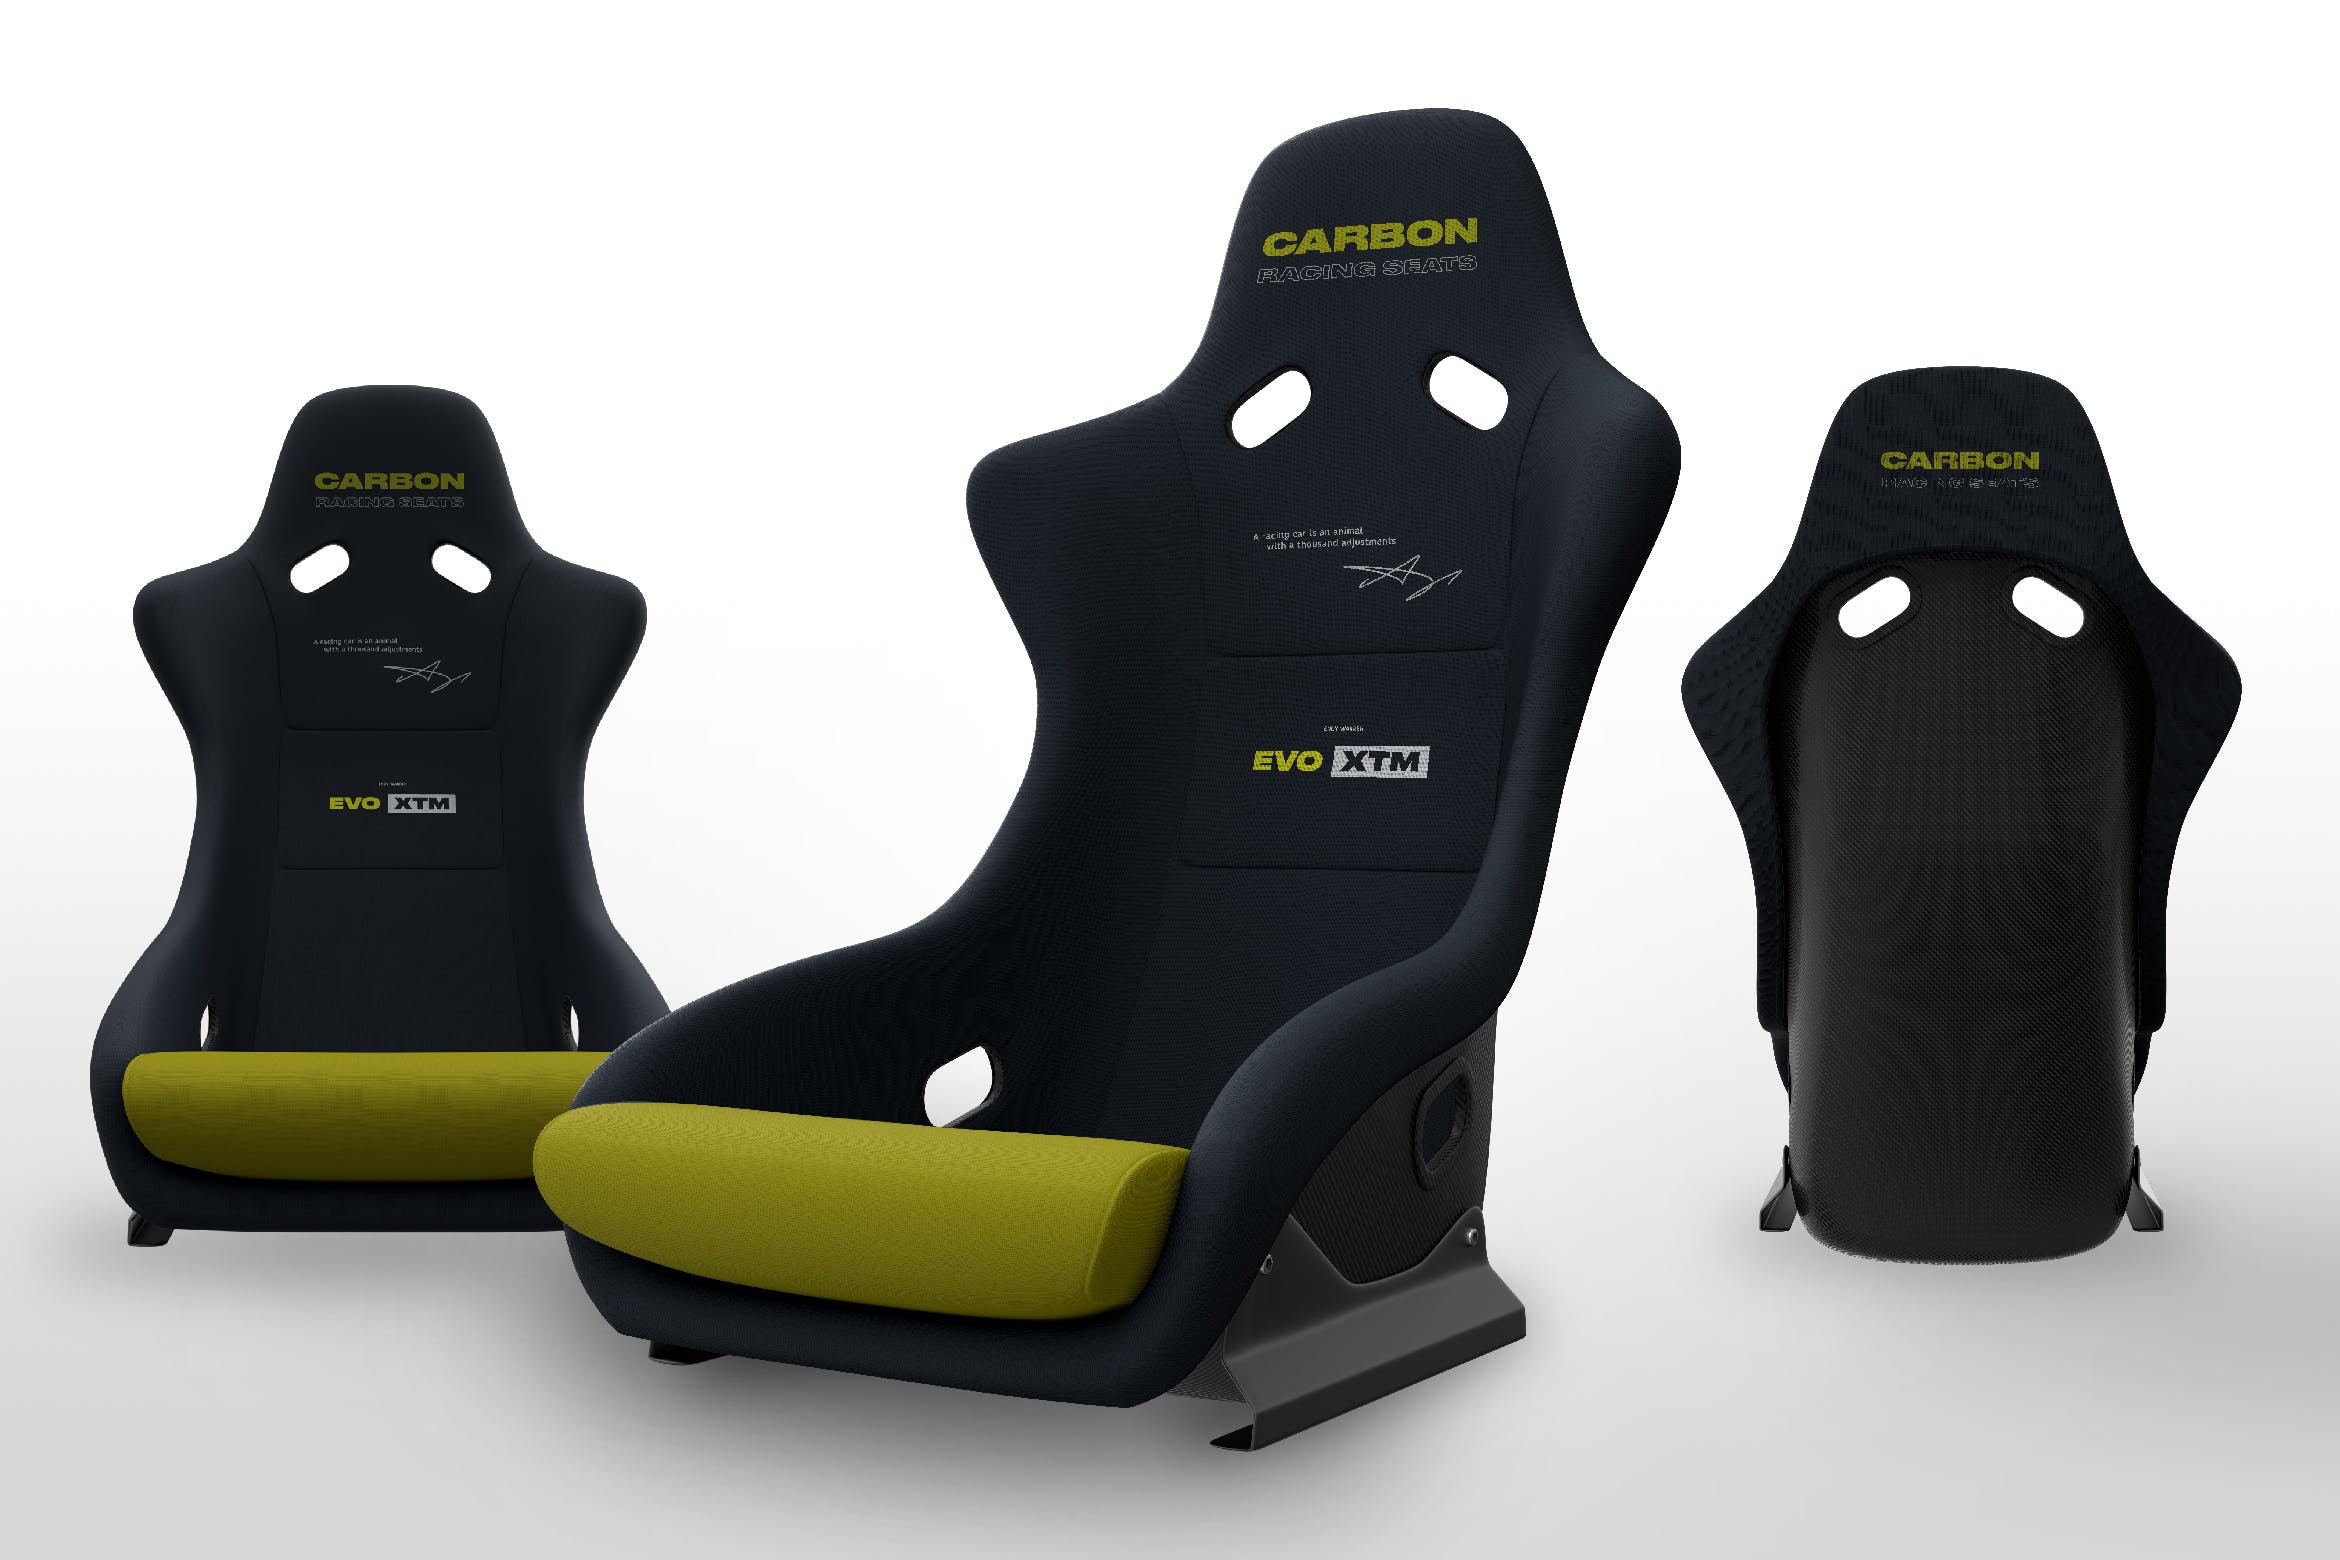 玻璃纤维赛车座椅工业设计图第一素材精选 Fiberglass Racing Seat Mockups插图